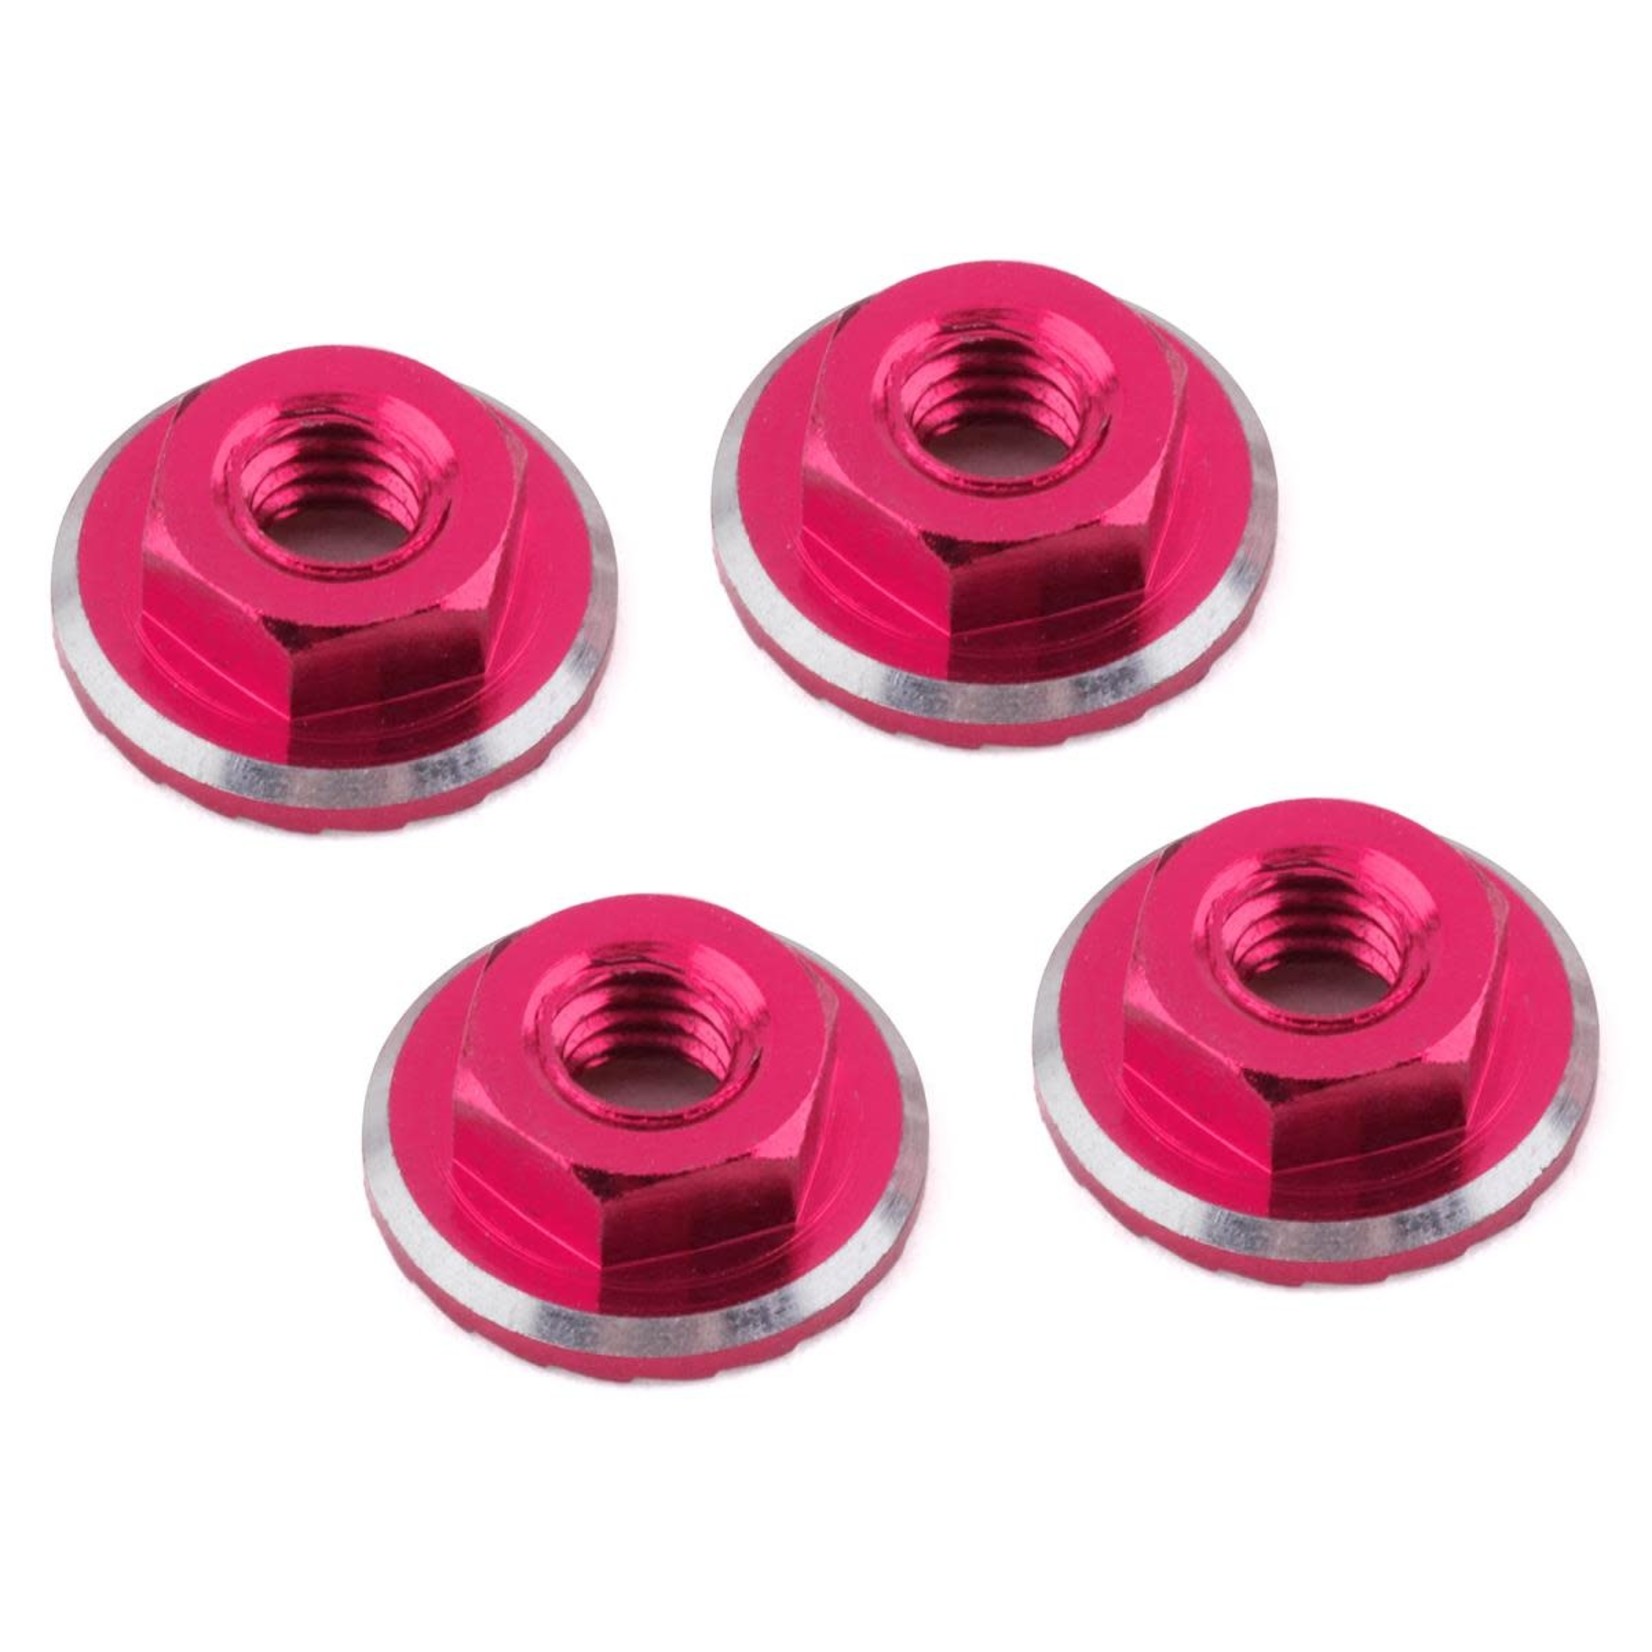 1UP Racing 1UP Racing Lockdown UltraLite 4mm Serrated Wheel Nuts (Pink) (4) #80541